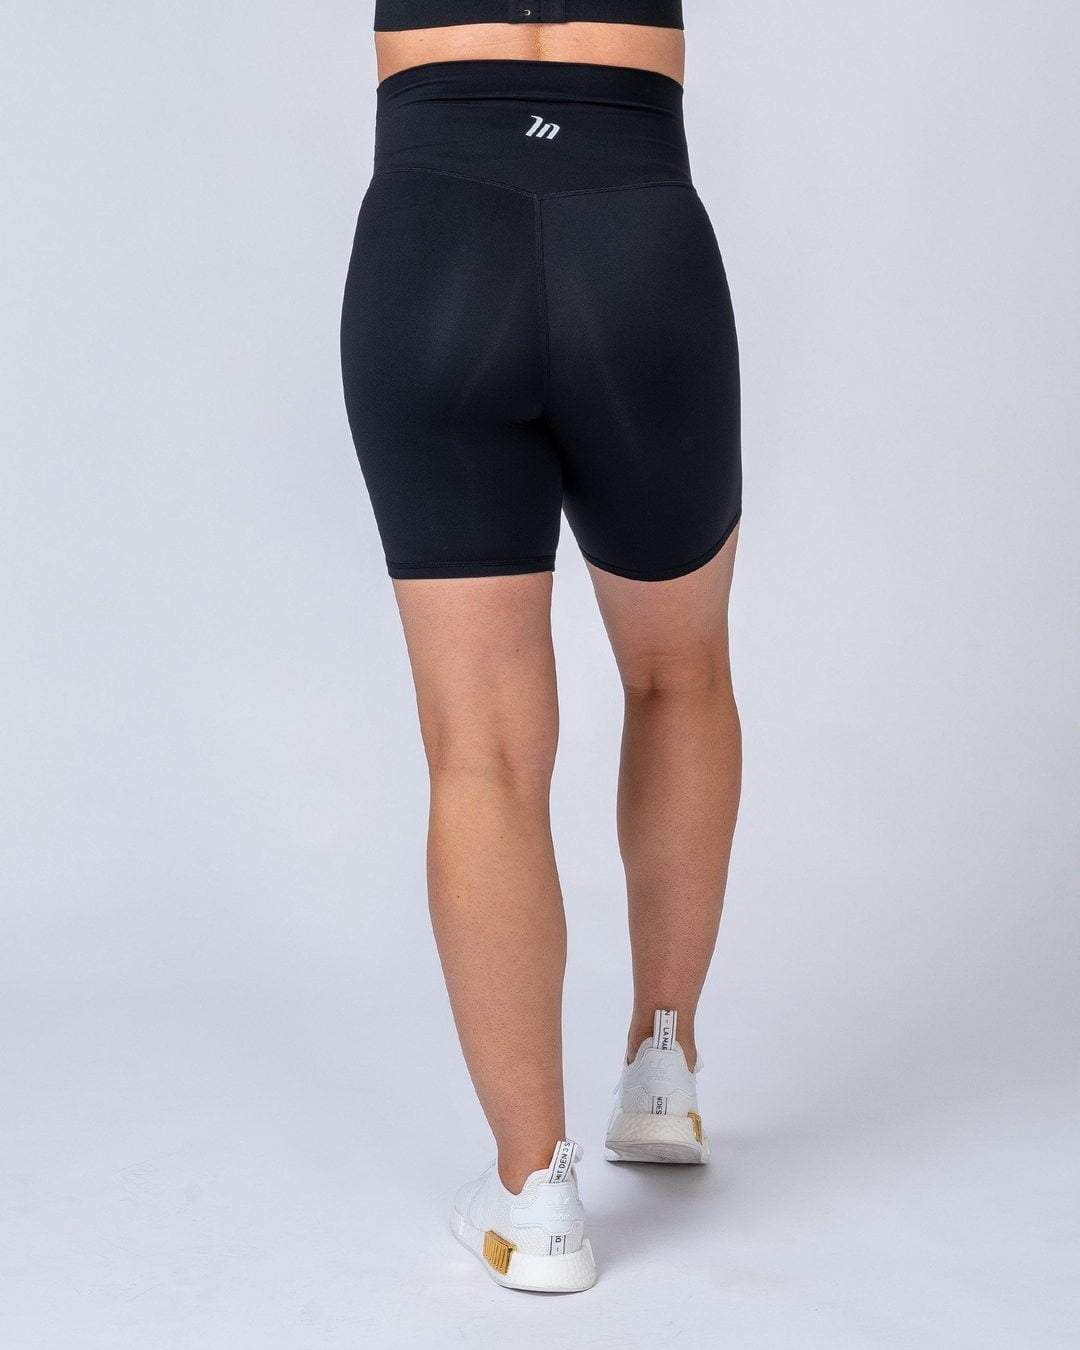 musclenation Maternity Bike Shorts - Black